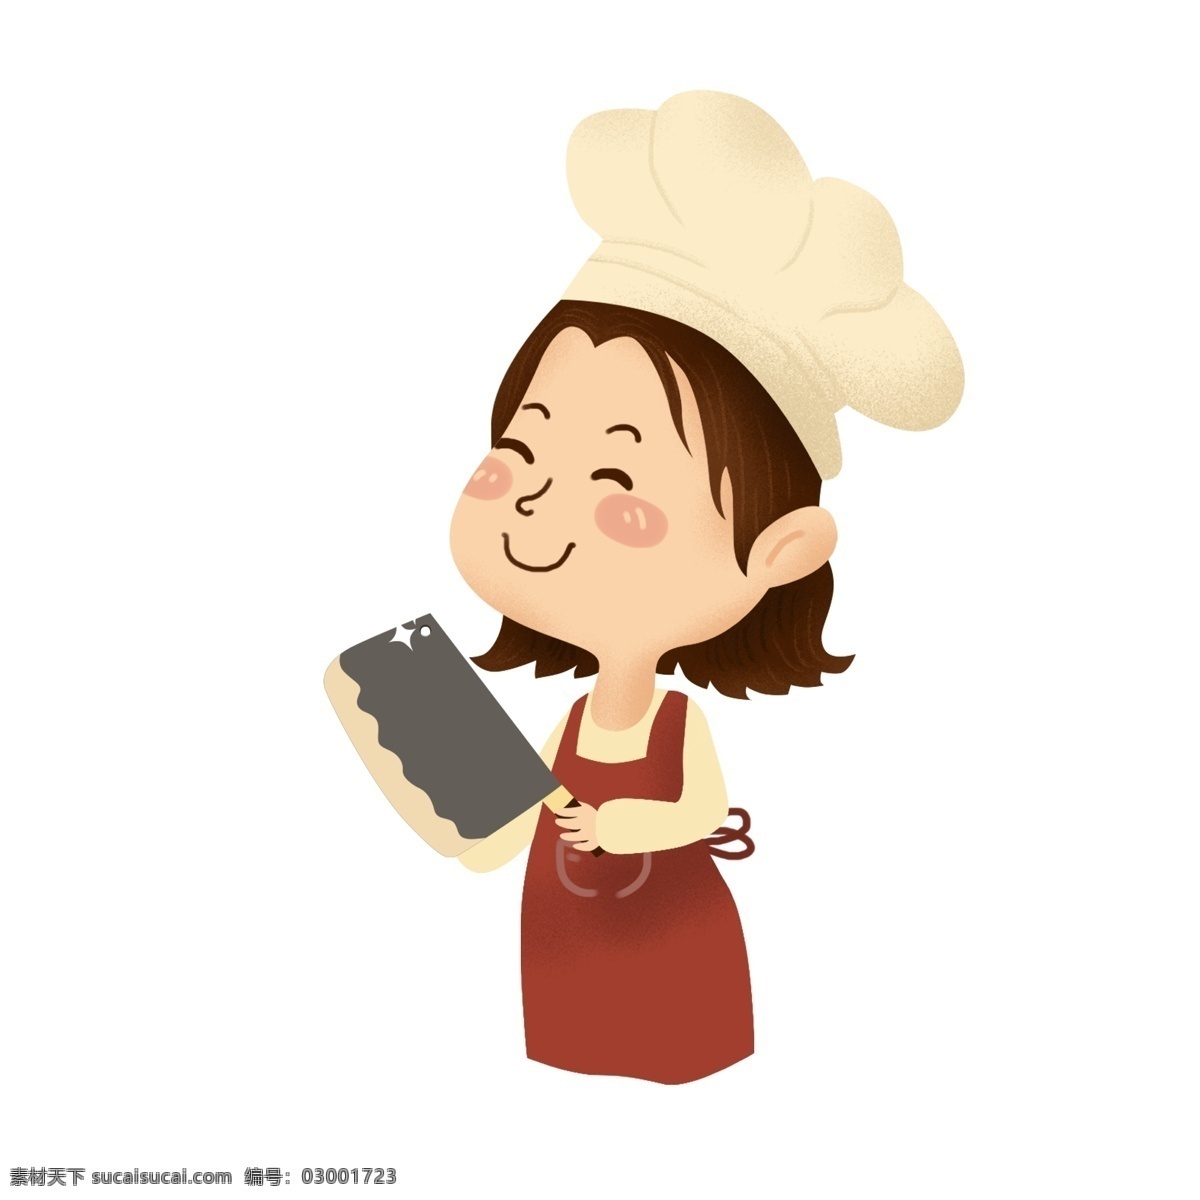 q 版 刀 女 厨师 商用 元素 q版 卡通 可爱 人物 插画 女厨师 菜刀